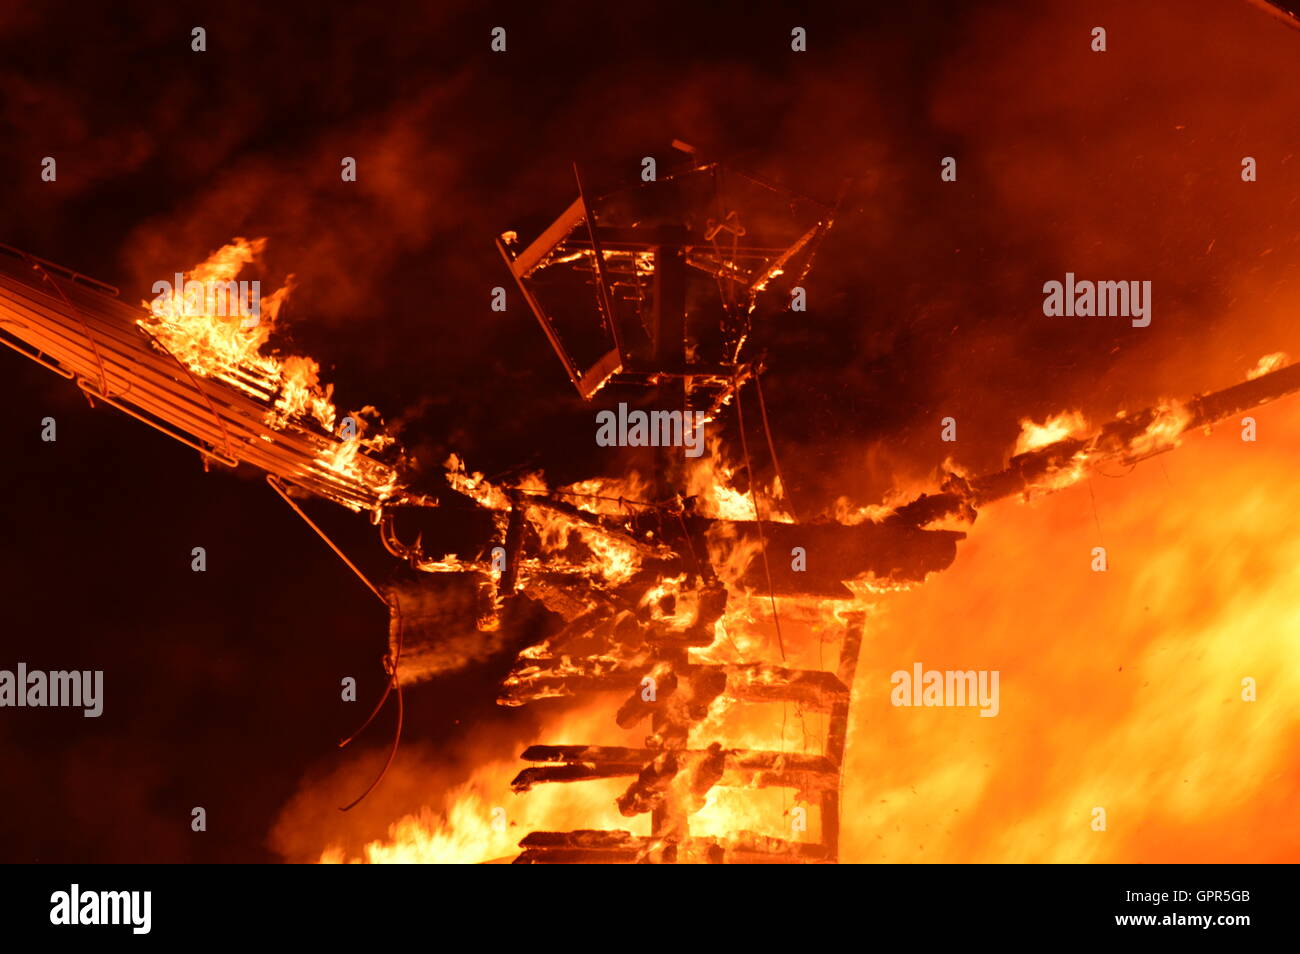 Die Burning Man-Skulptur ist während der letzten Feier auf dem jährlichen Wüste Festival brennende Mann 3. September 2016 in Black Rock City, Nevada angezündet. Stockfoto